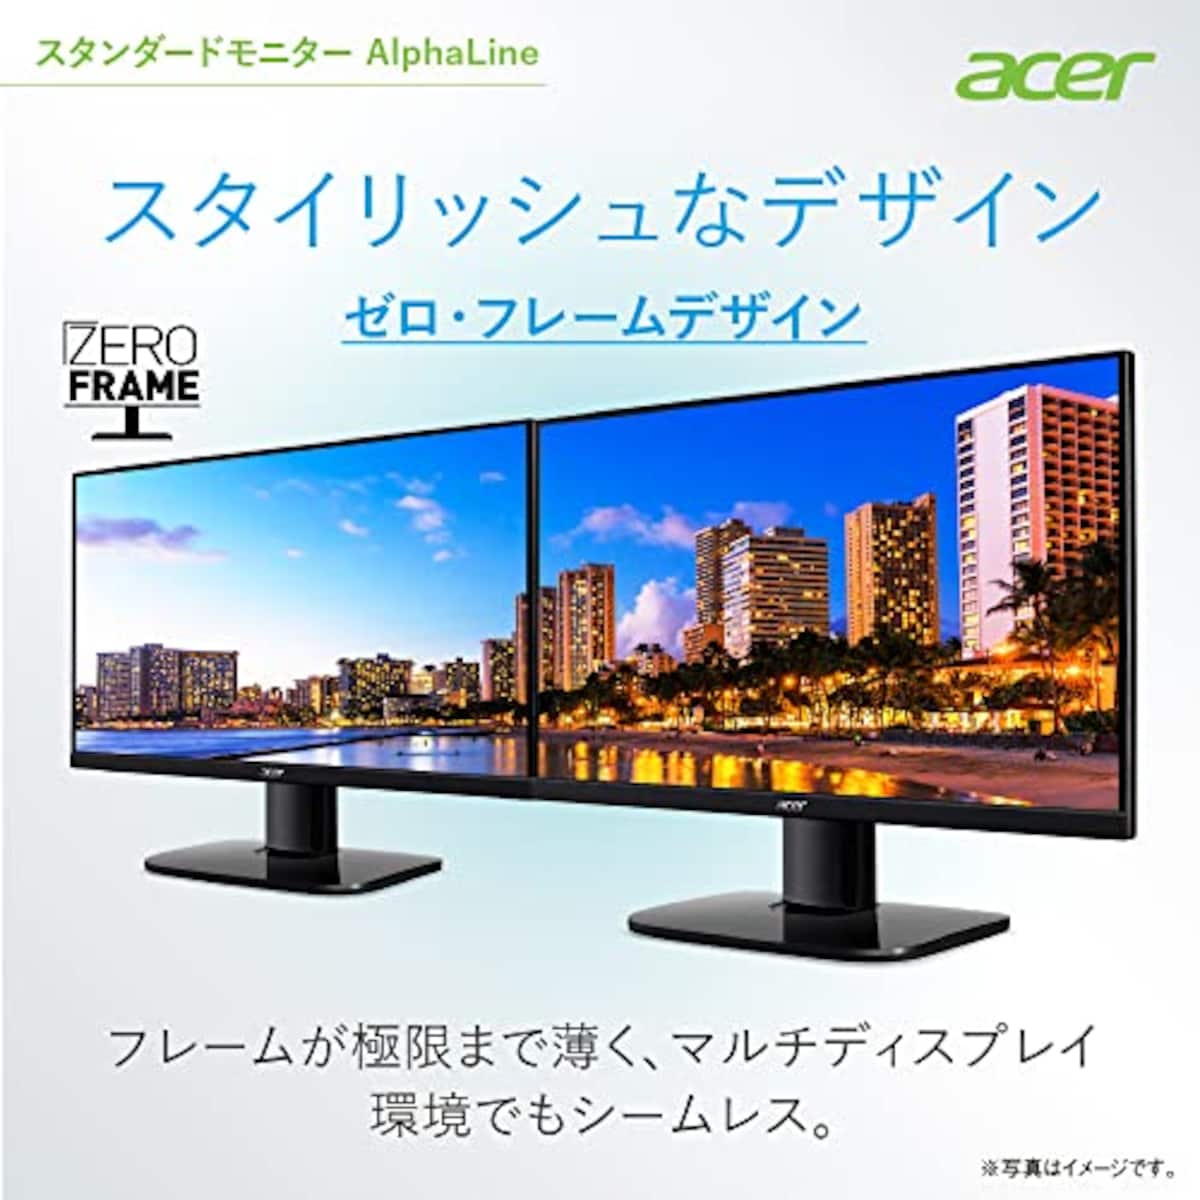  日本エイサー 【Amazon.co.jp限定】 Acer モニター AlphaLine KA272Ebmix 27インチ IPS 非光沢 フルHD 100Hz 1ms(VRB) HDMI ミニD-Sub15 VESAマウント対応 スピーカー内蔵 ヘッドホン端子 AMD FreeSync画像4 